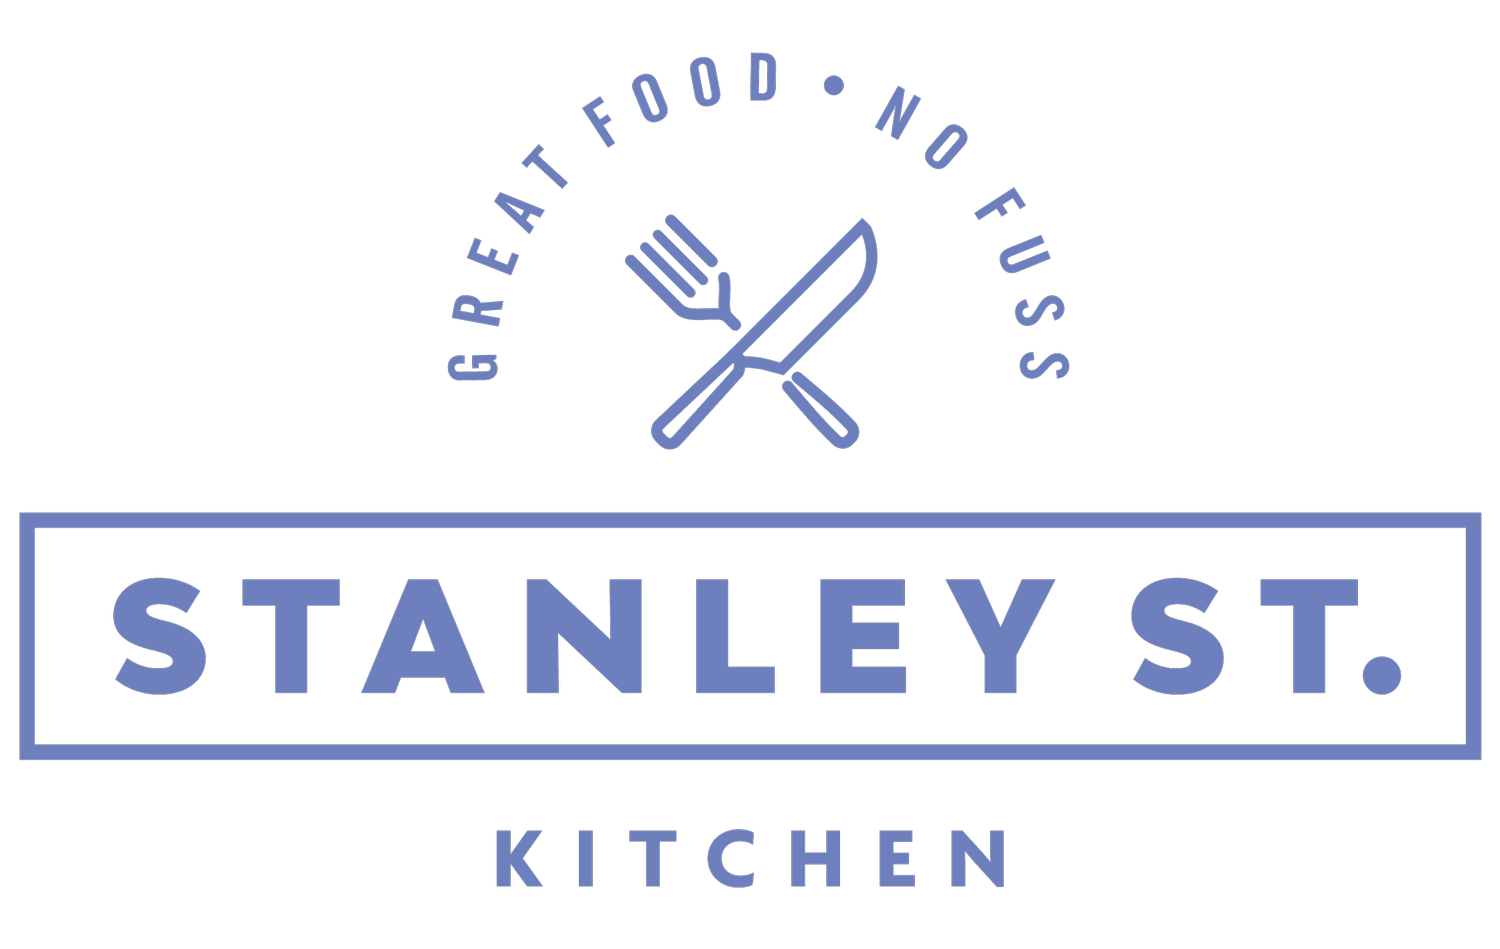 Stanley St Kitchen